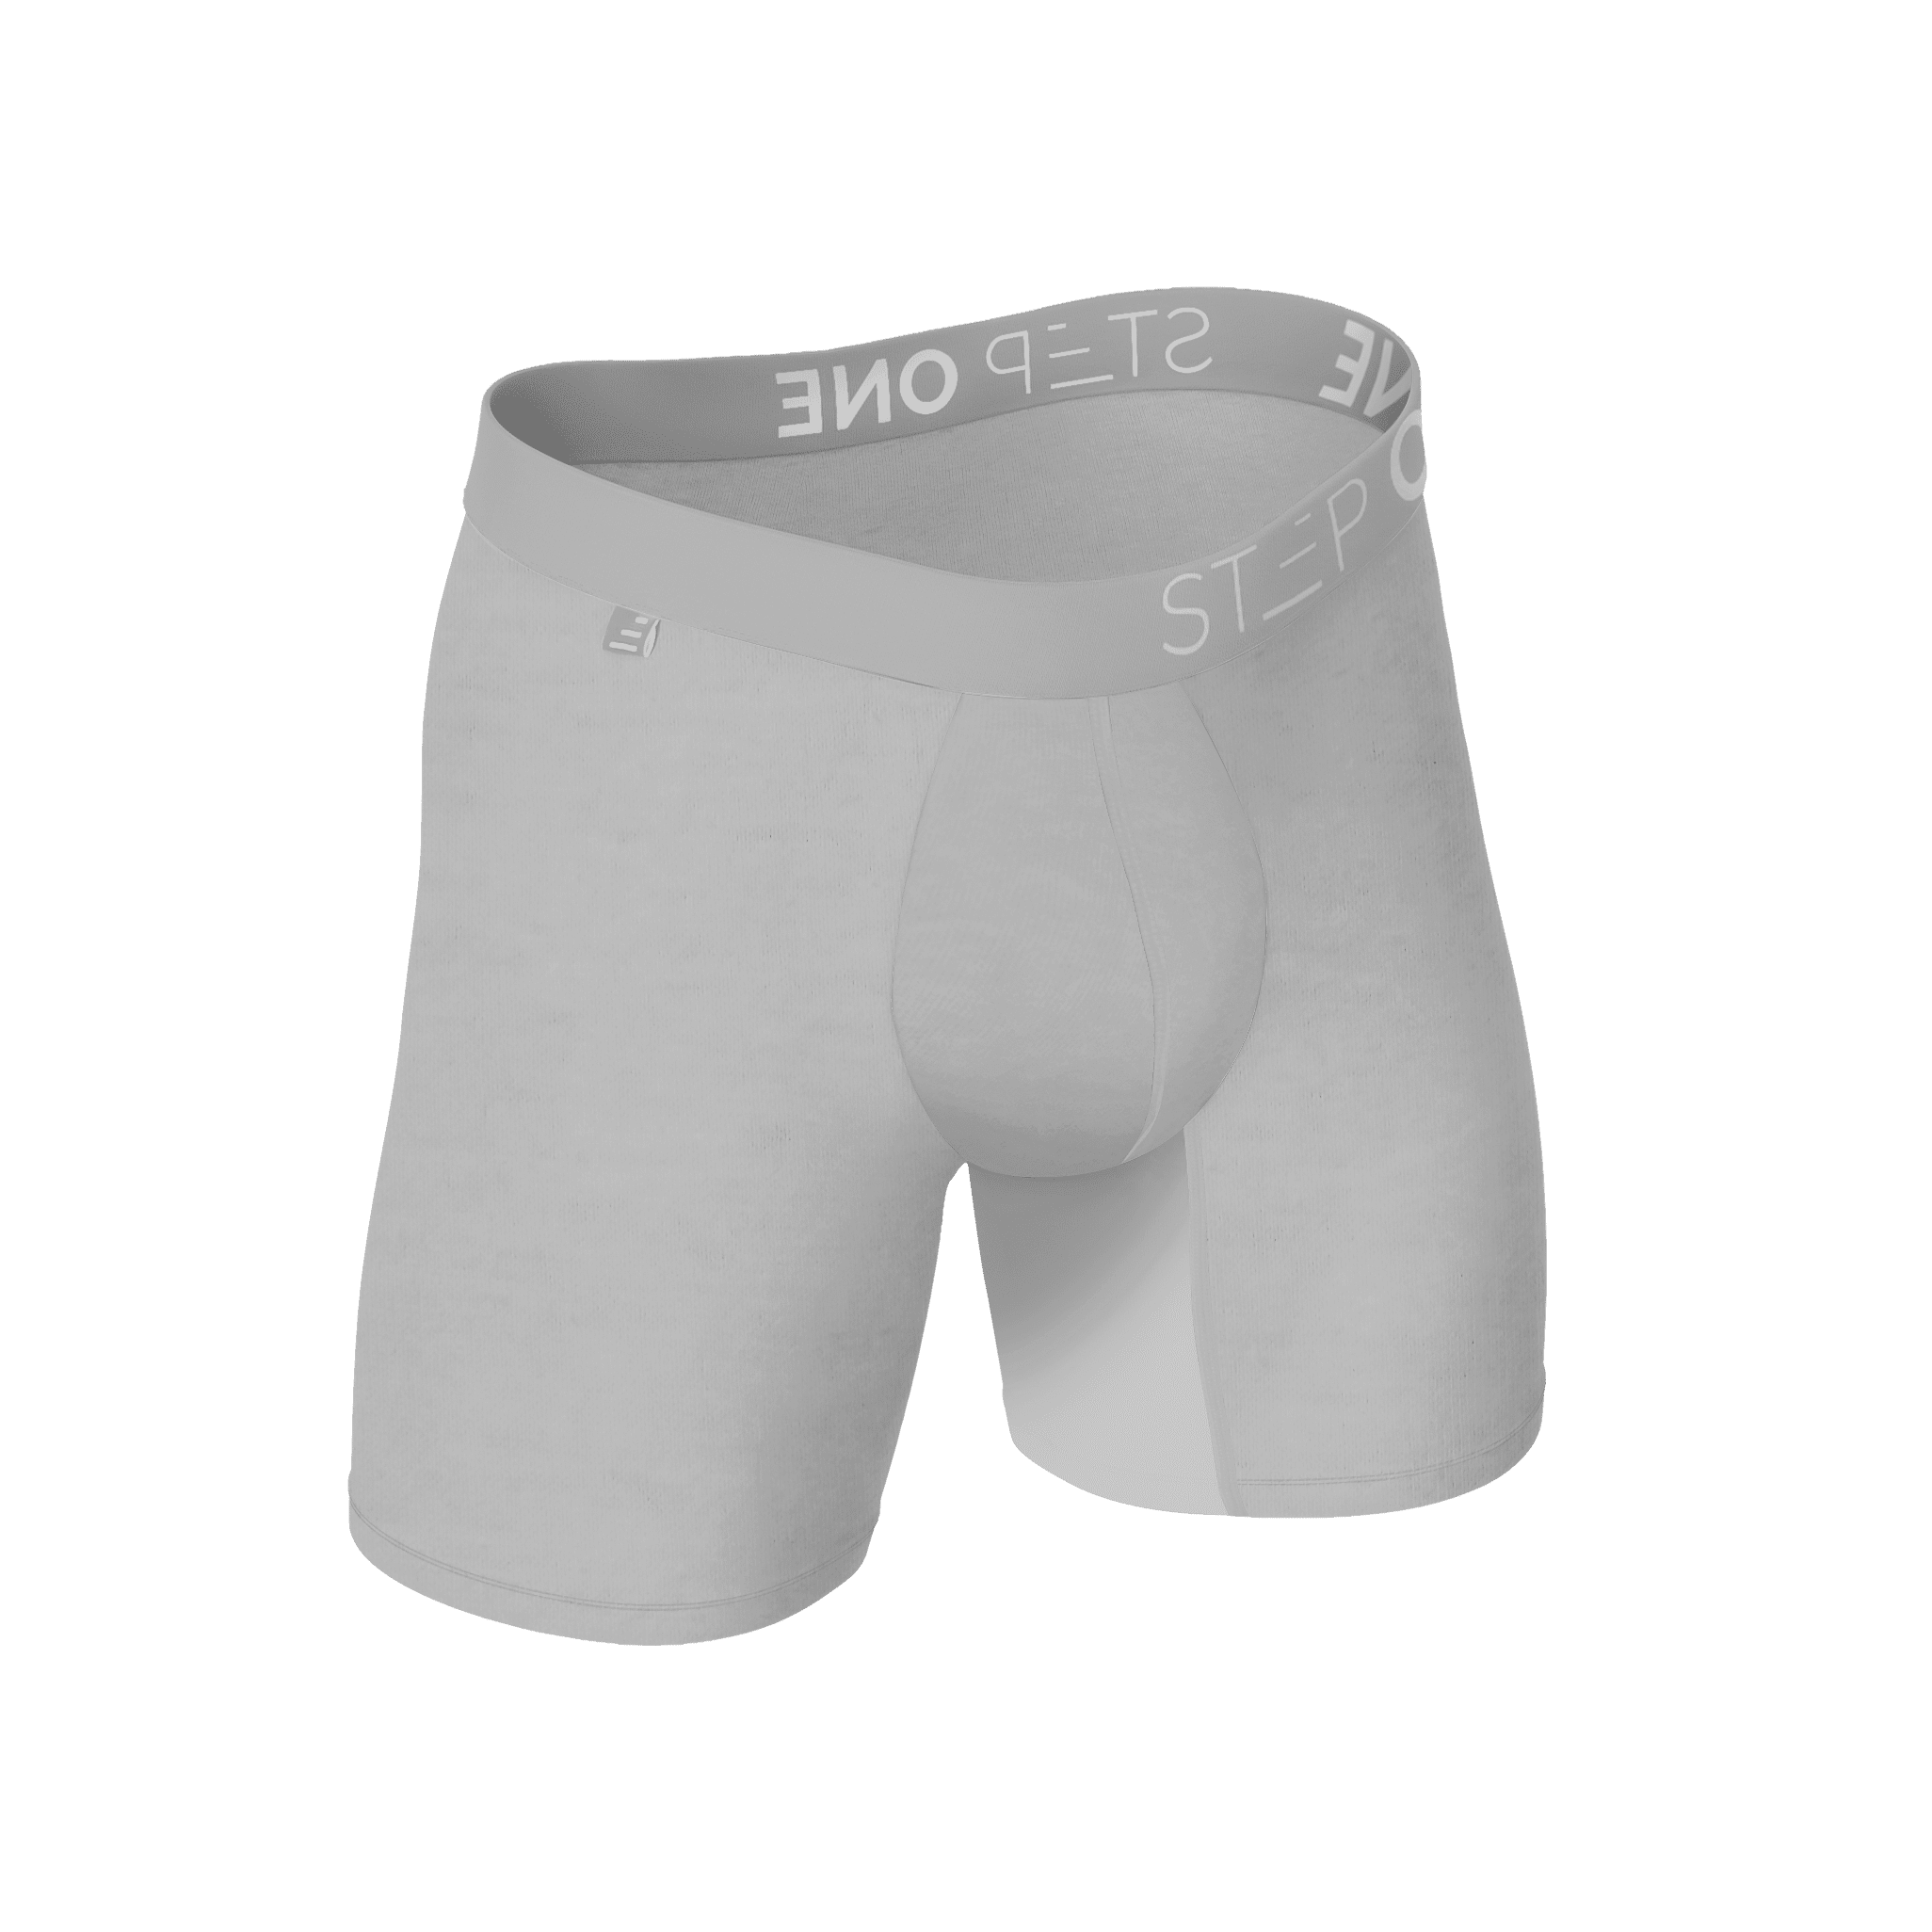 Boxer Brief - Tin Cans  Step One Men's Underwear